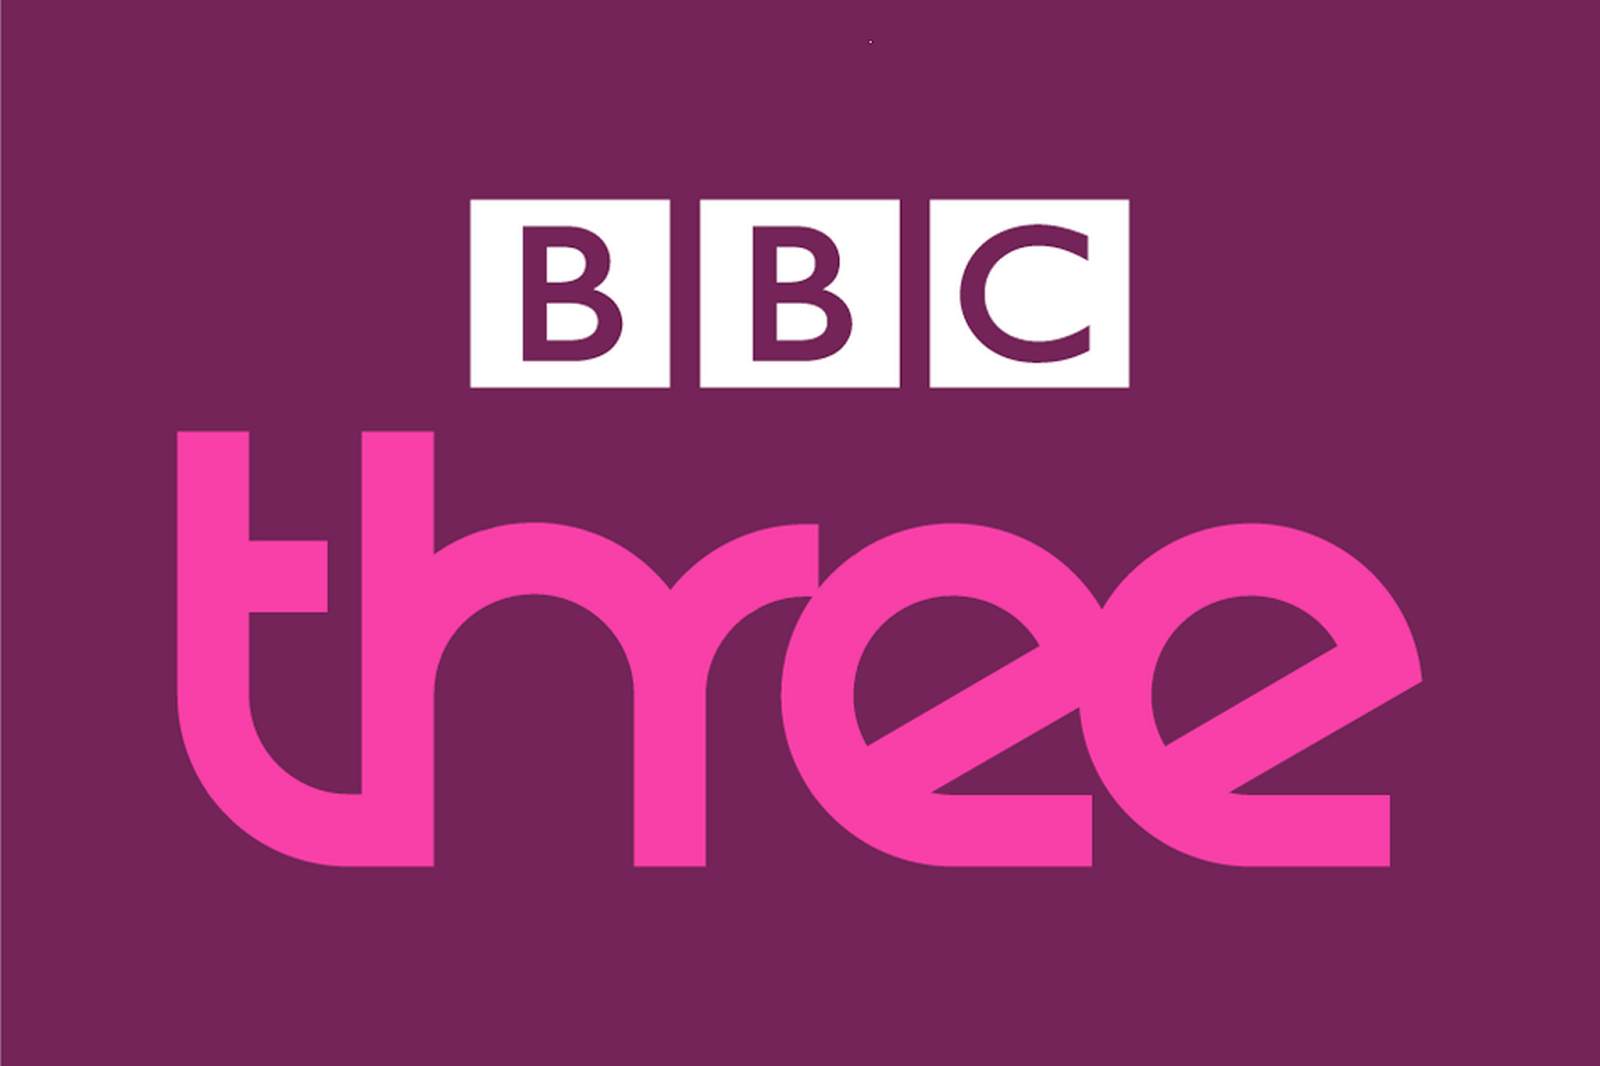 bbc_three_hd